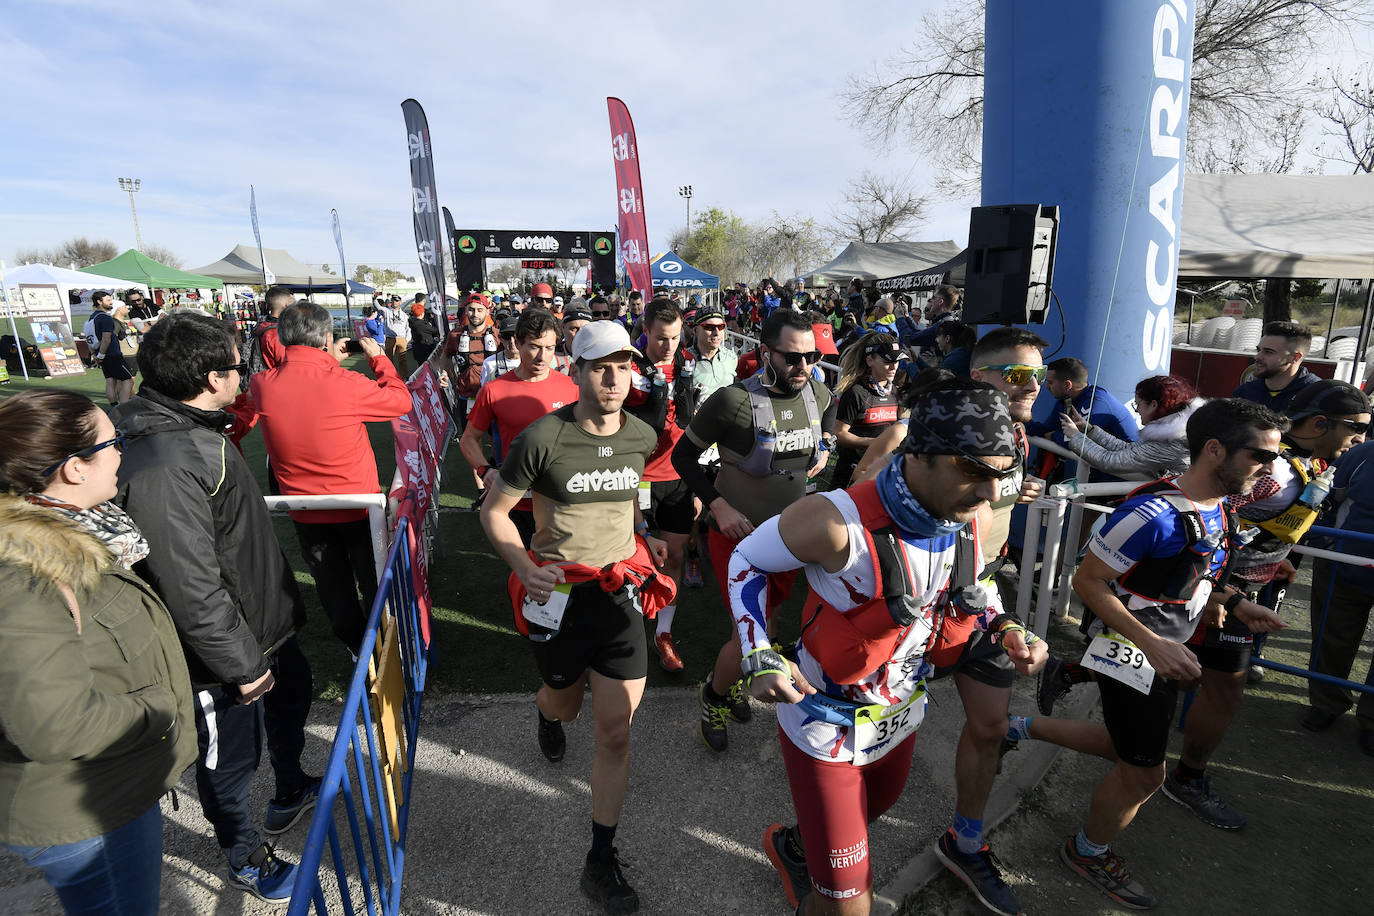 El corredor del Club Wapaventura completa los 50 kilómetros con 3.000 metros de desnivel positivo en 5 horas y 24 minutos, por la marca de 6 horas y 35 minutos de la atleta del Kampamento Base